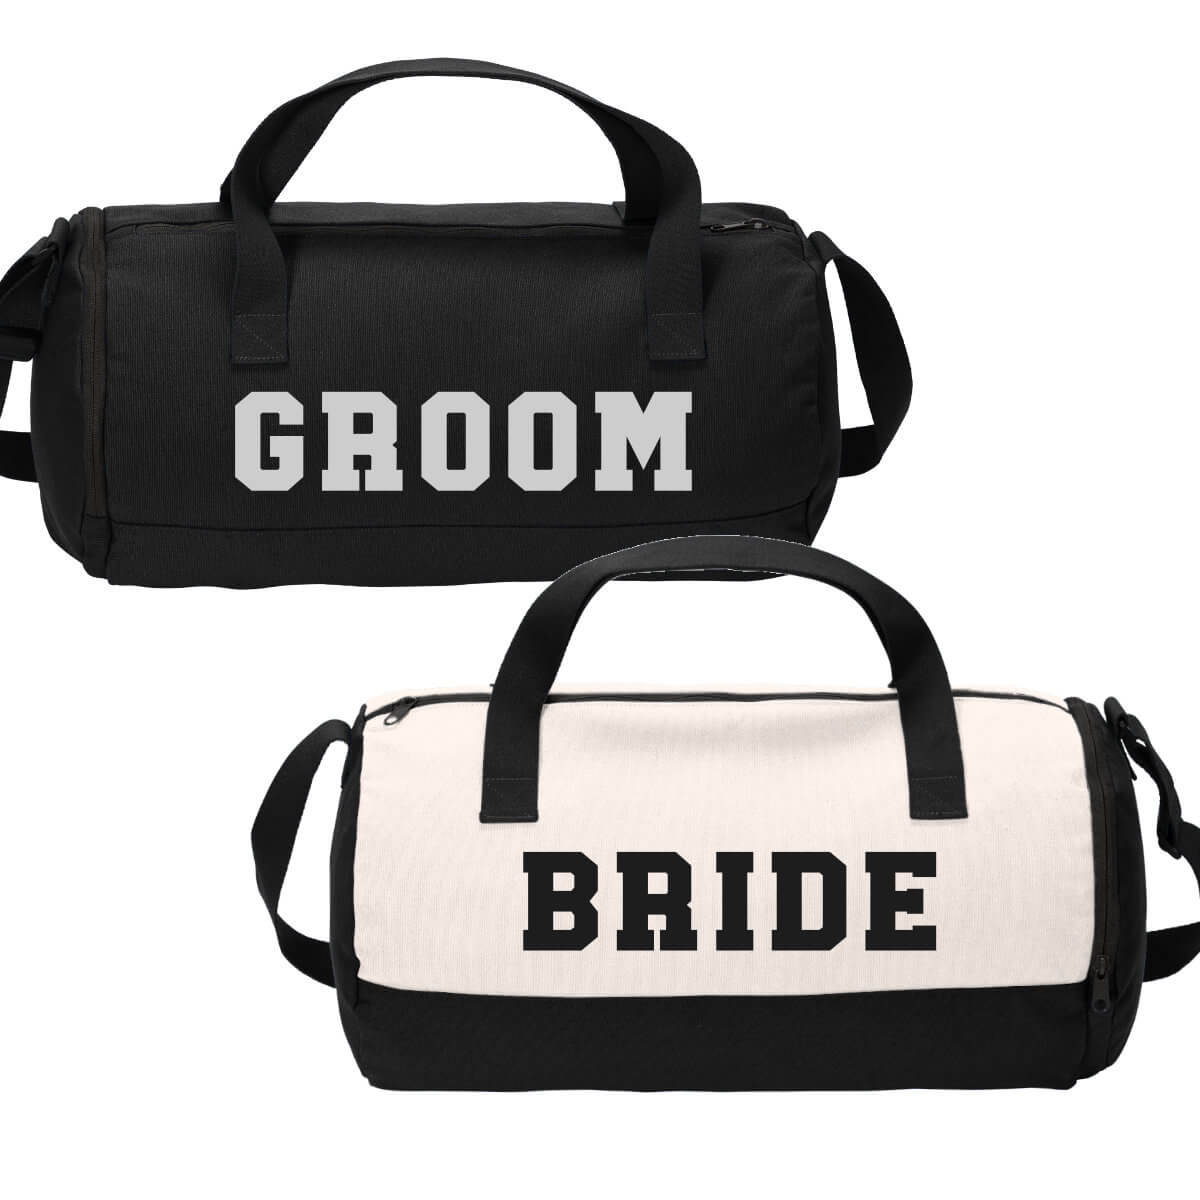 Travel Bag Set  Travel bag set, Bride travel bag, Bag set